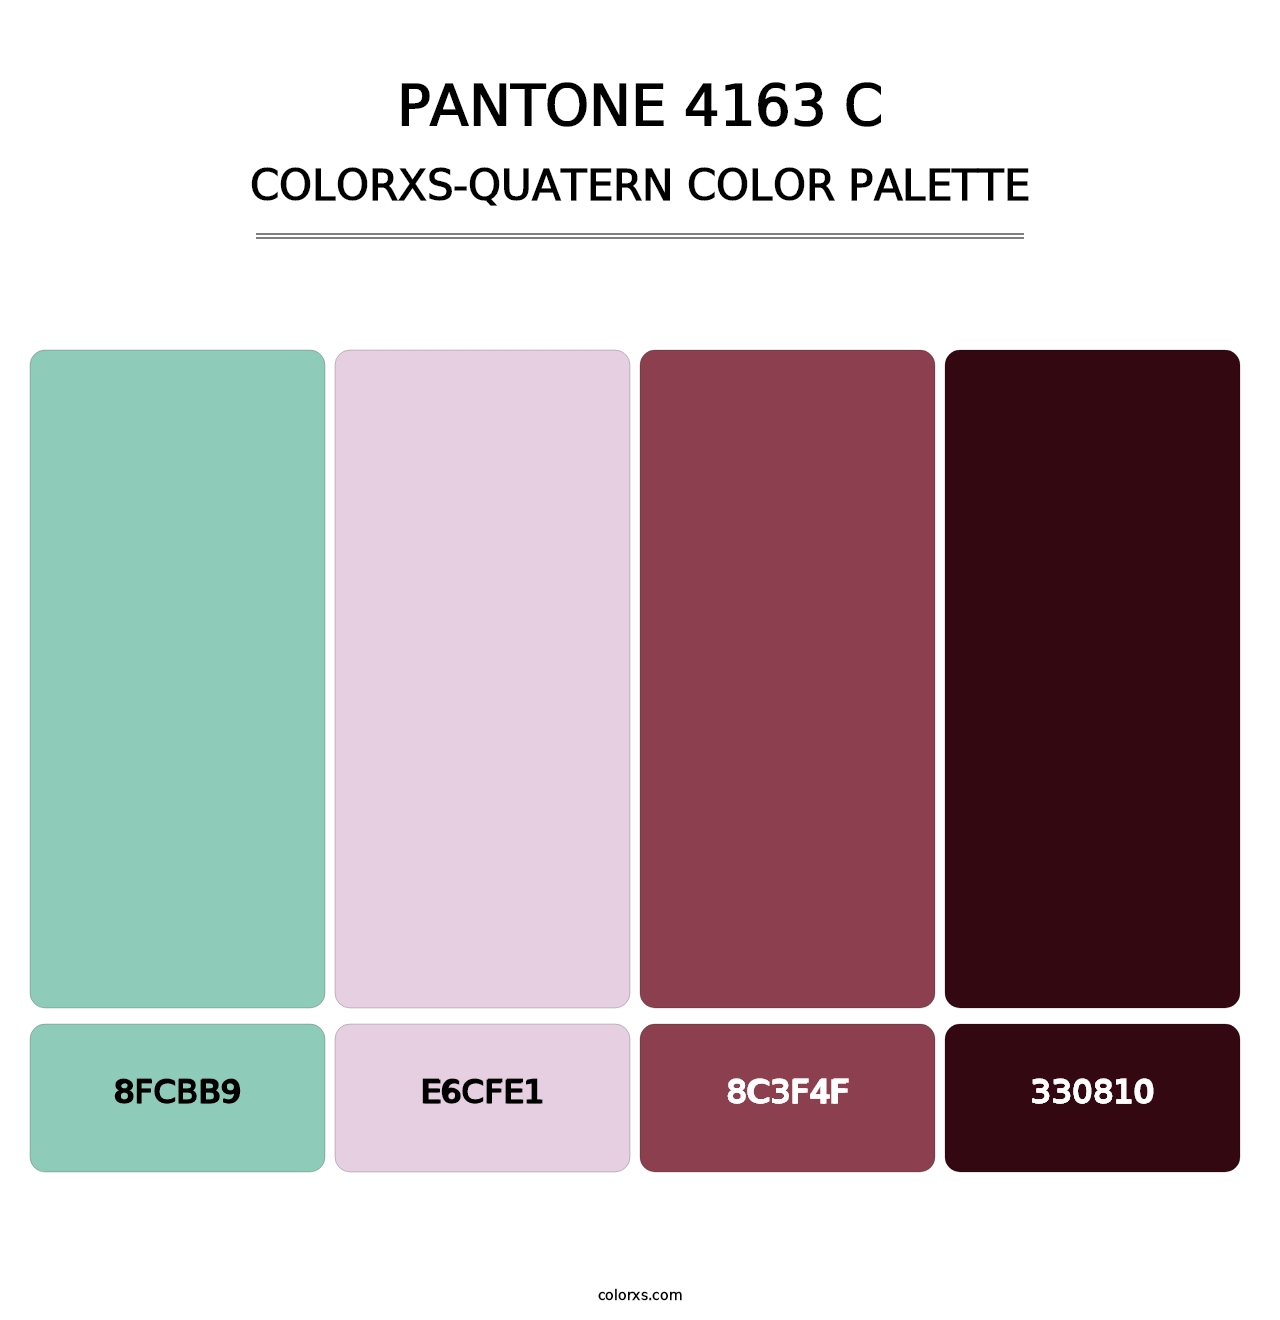 PANTONE 4163 C - Colorxs Quatern Palette